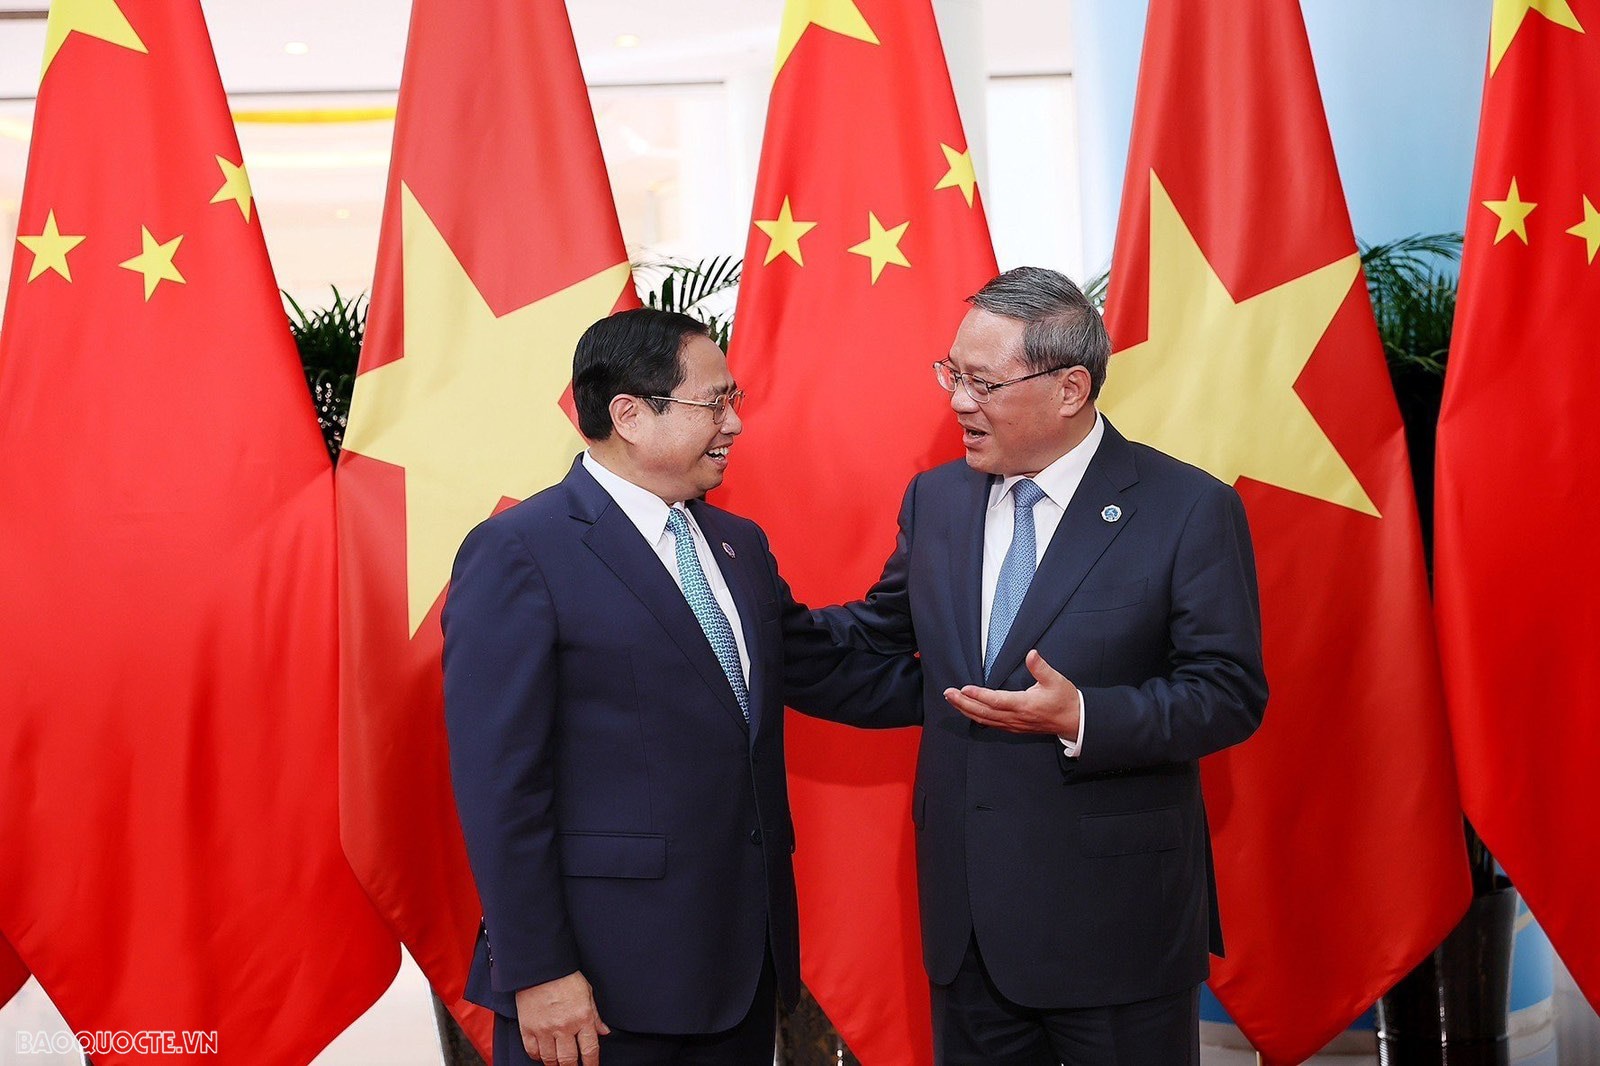 Thứ trưởng Thường trực Bộ Ngoại giao Nguyễn Minh Vũ: Chuyến công tác Trung Quốc của Thủ tướng Phạm Minh Chính có ý nghĩa rất quan trọng